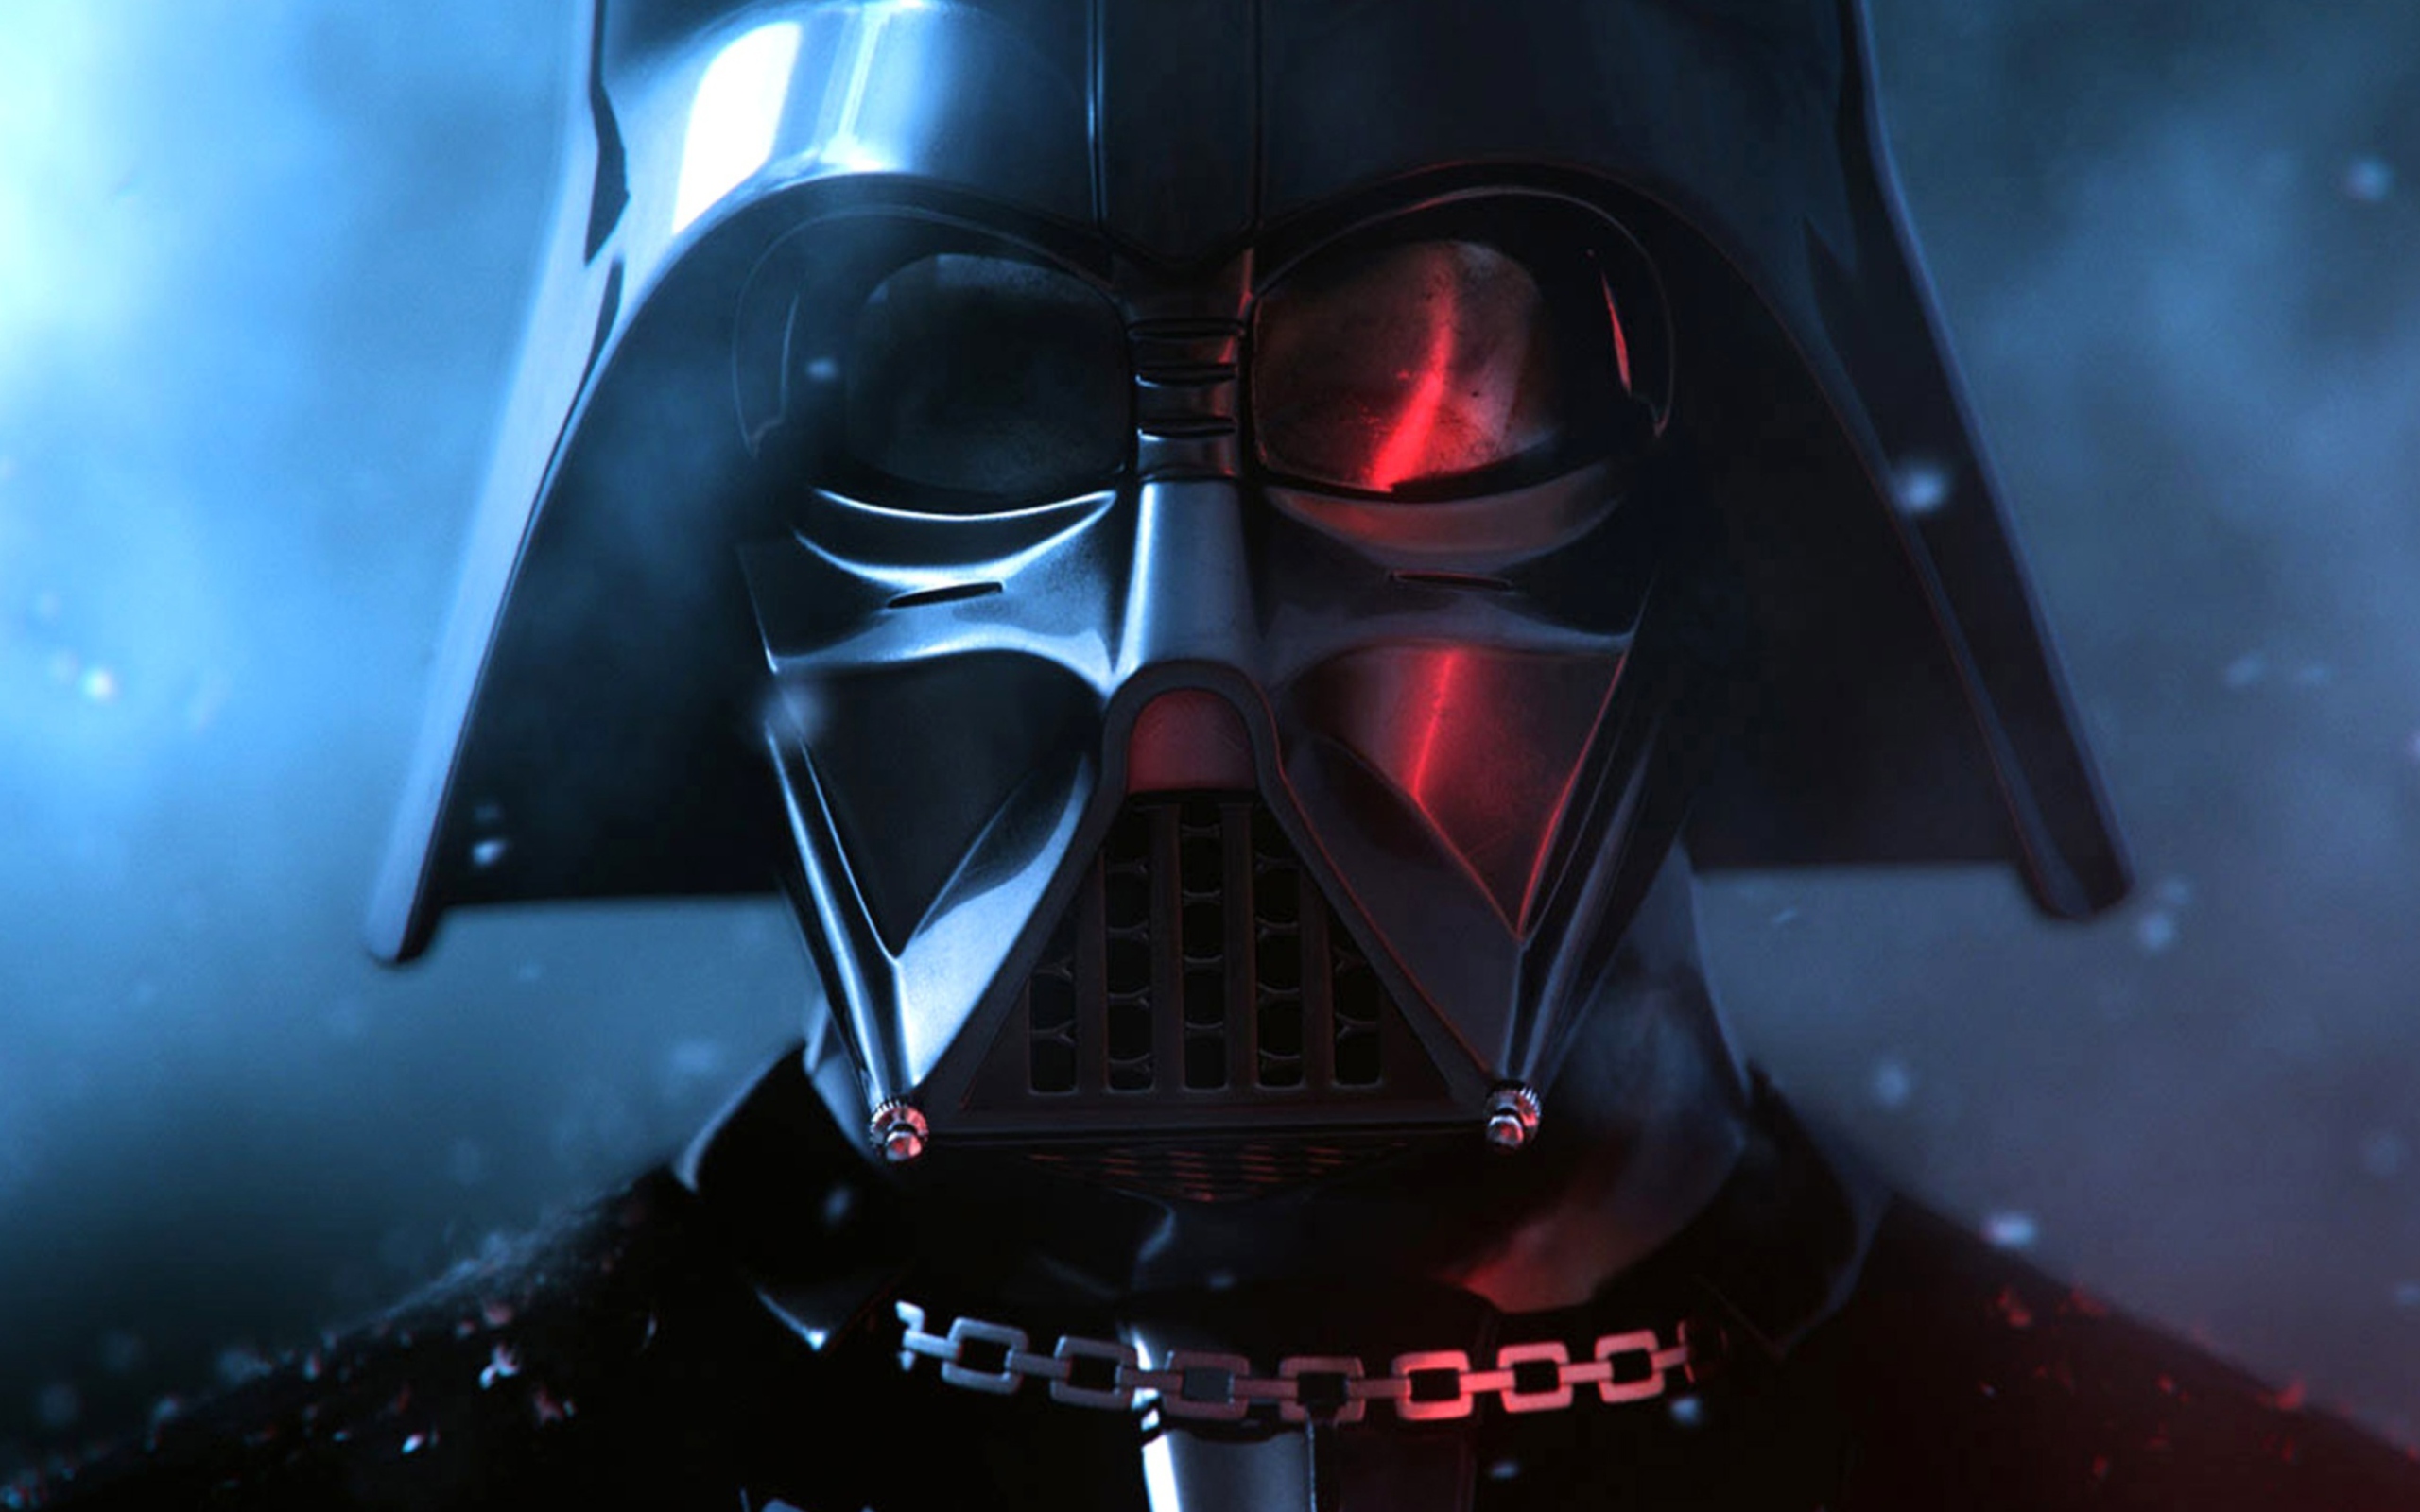 Sfondi Darth Vader 2560x1600